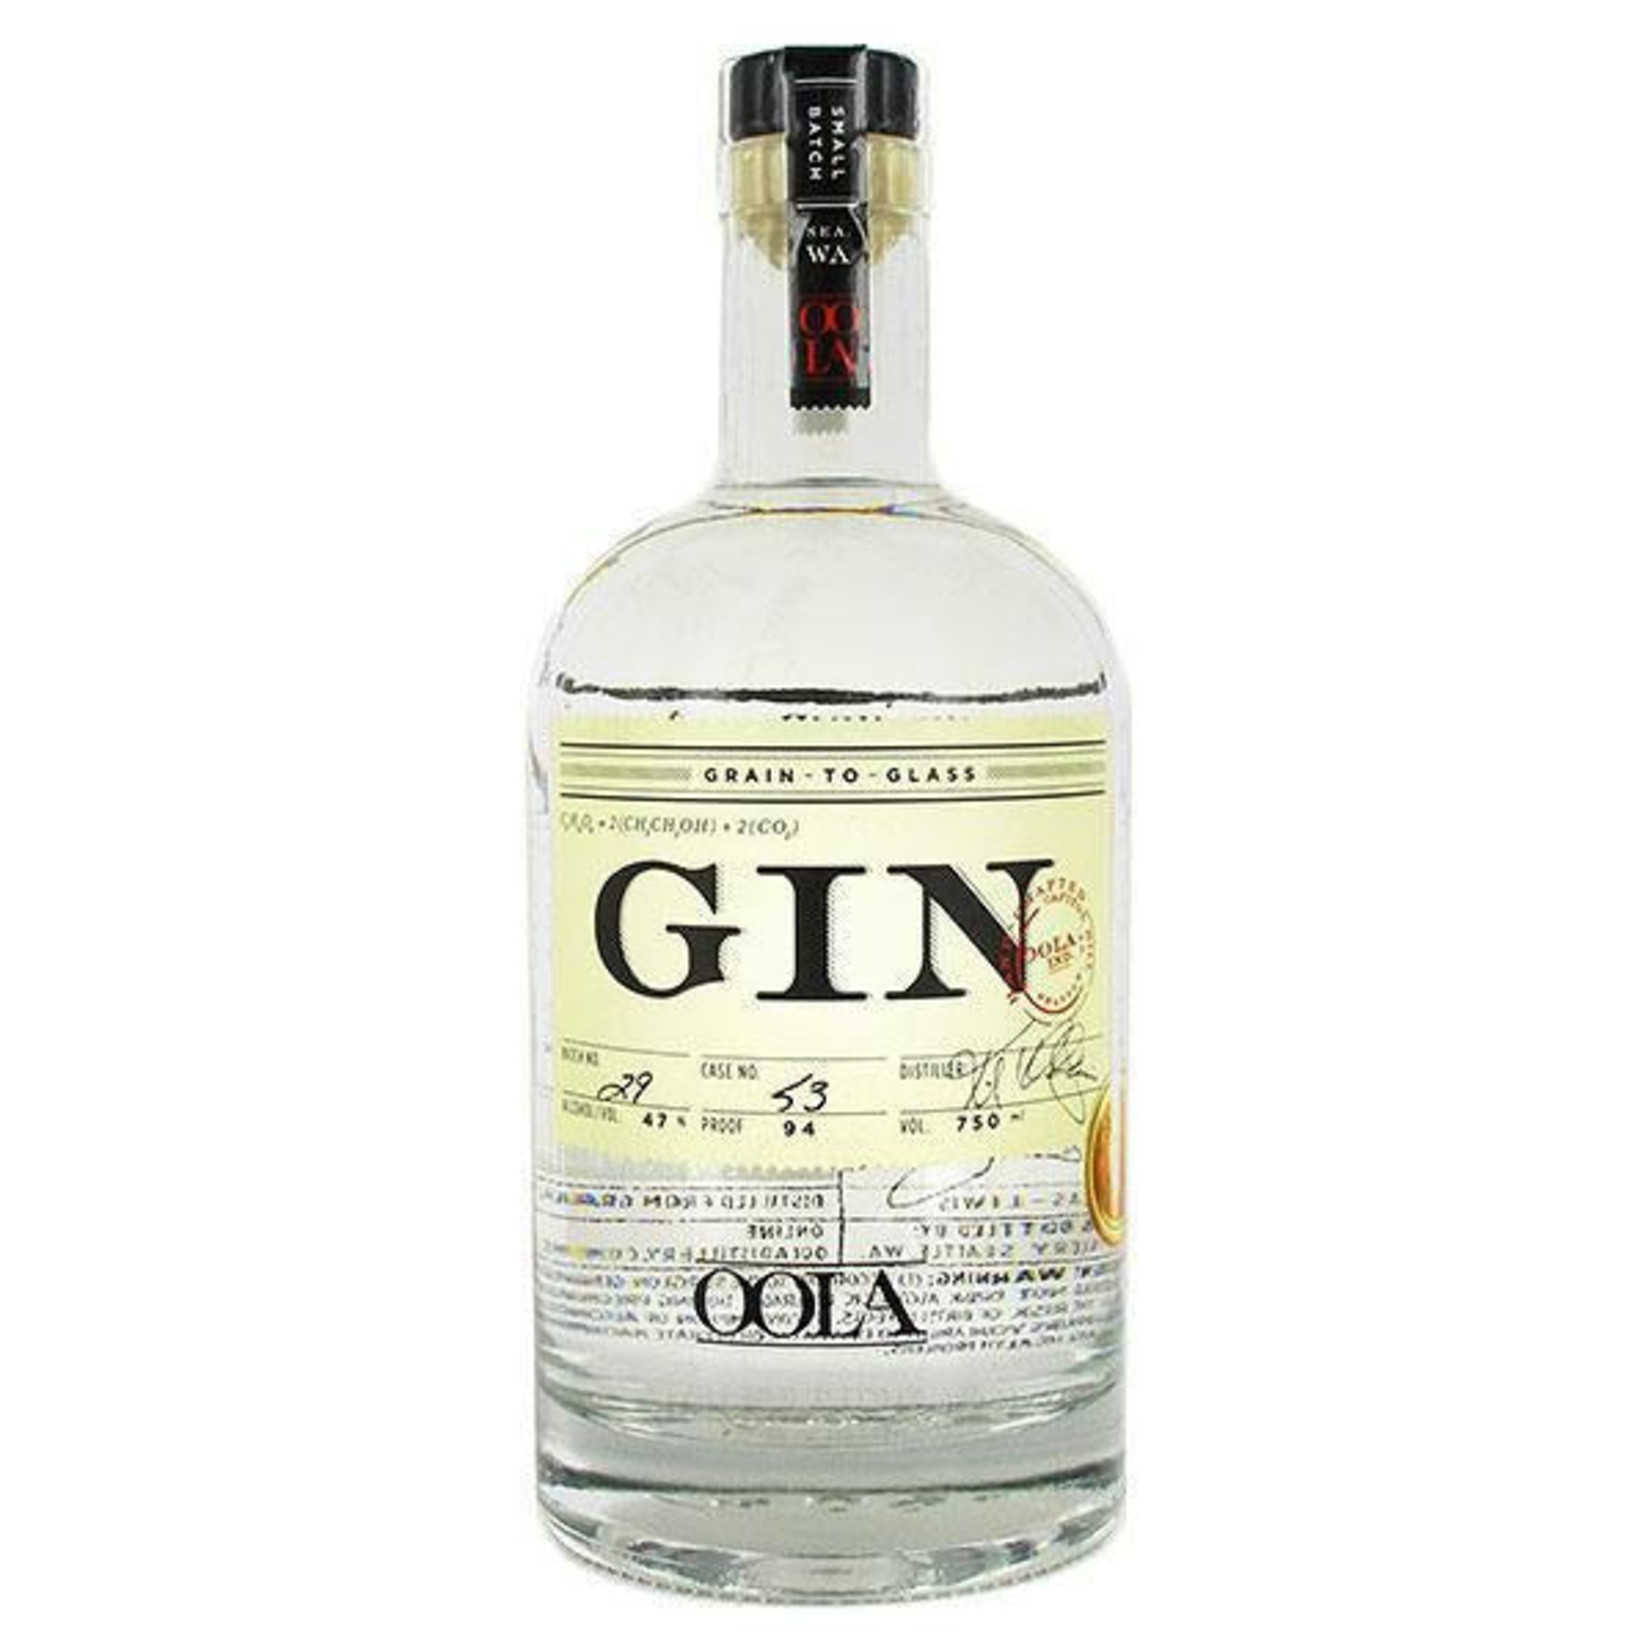 Oola gin